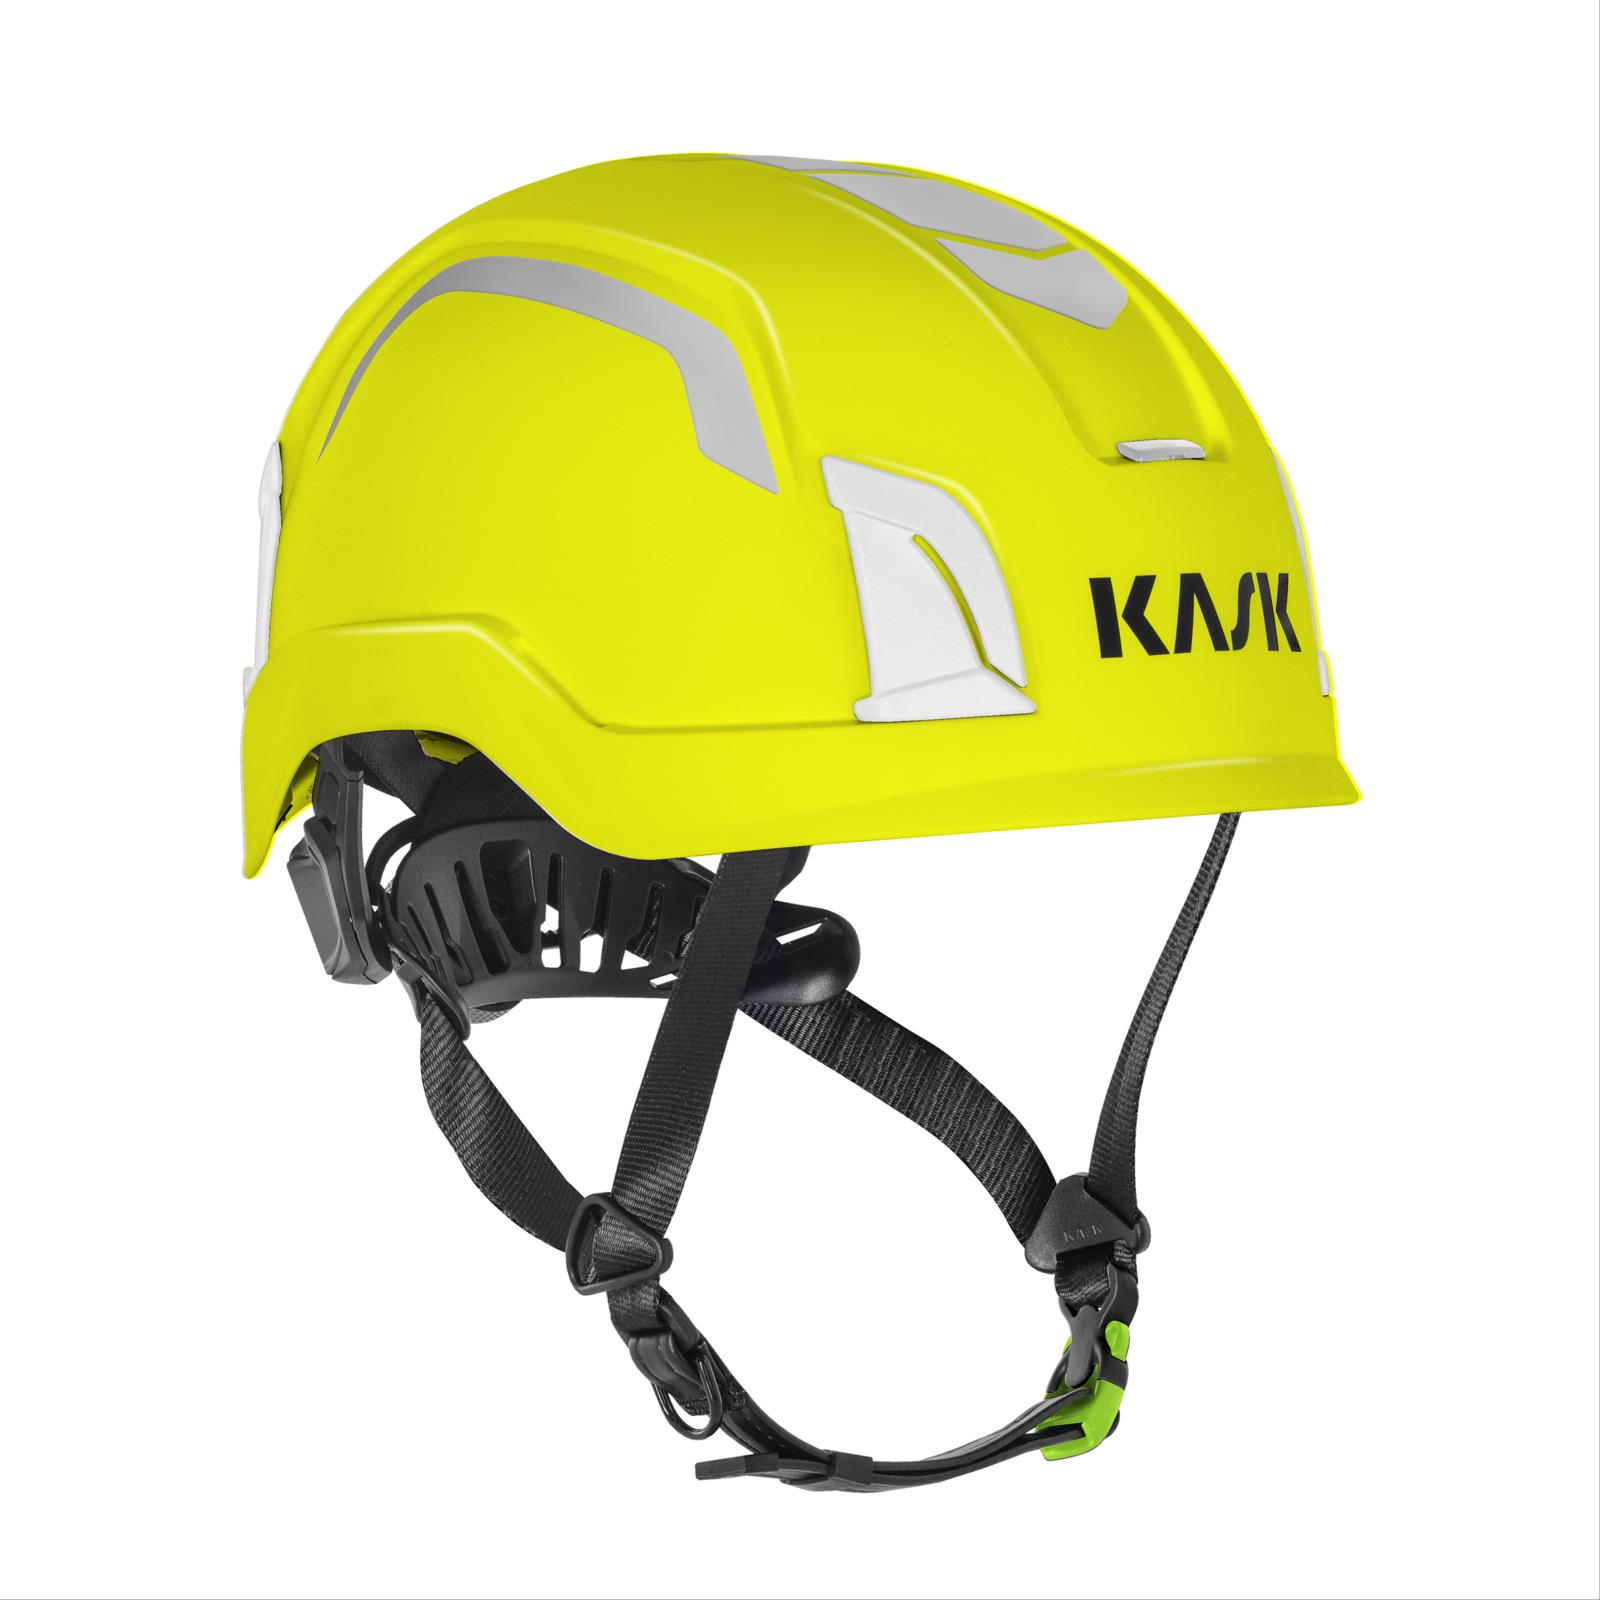 ZENITH X2 HI VIZ, Type 2 Helmet